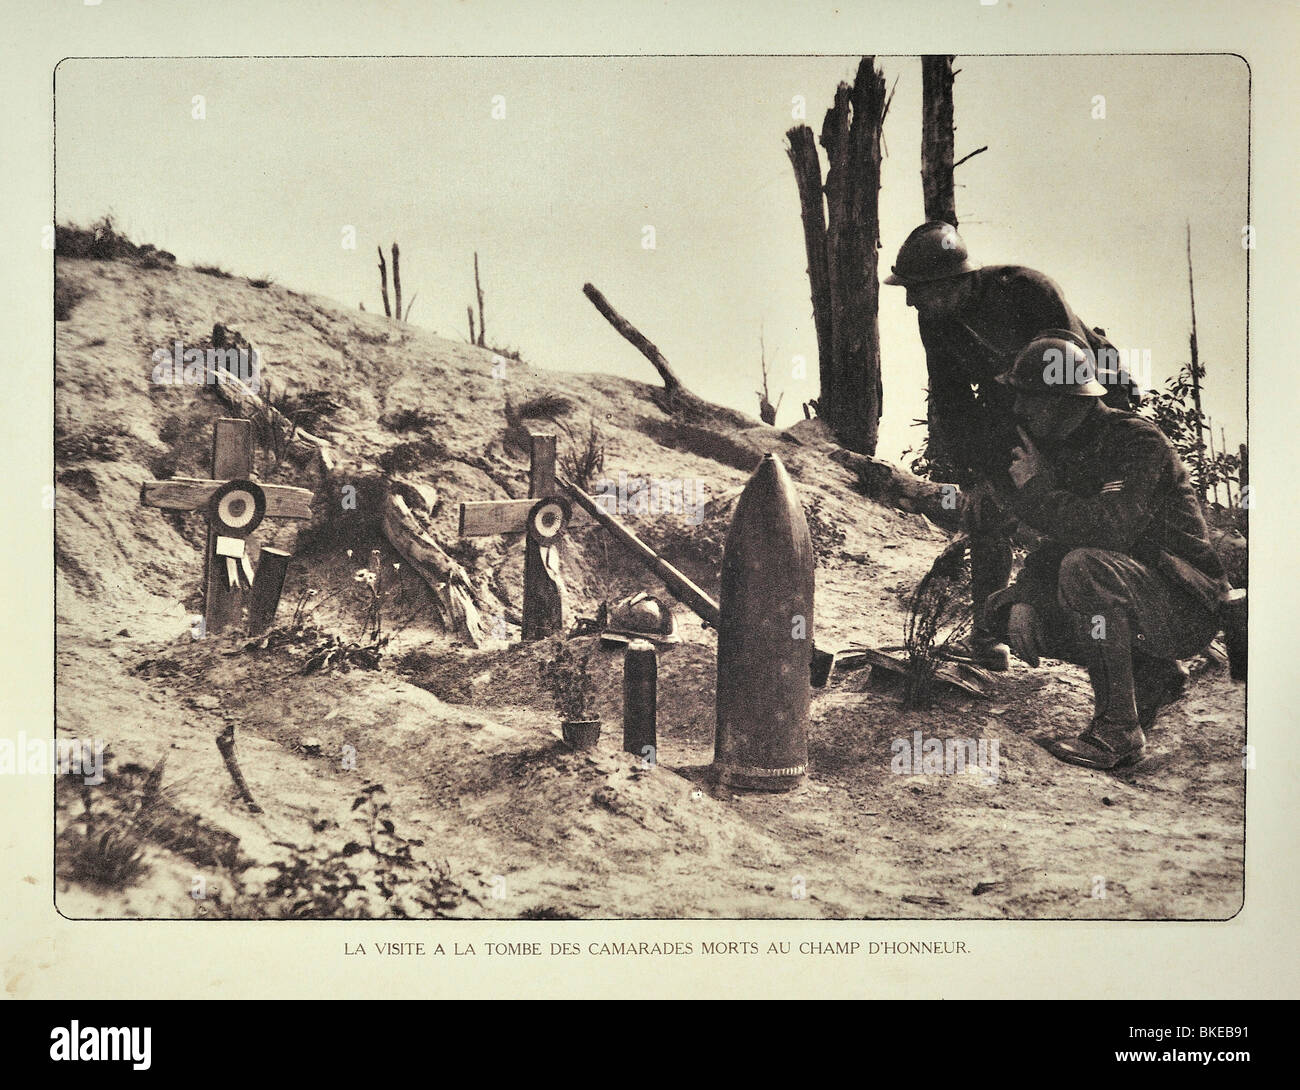 WW1 soldats visiter les tombes décorées de temporaire à Shell d'artillerie bataille en Flandre pendant la Première Guerre mondiale, la Belgique Banque D'Images